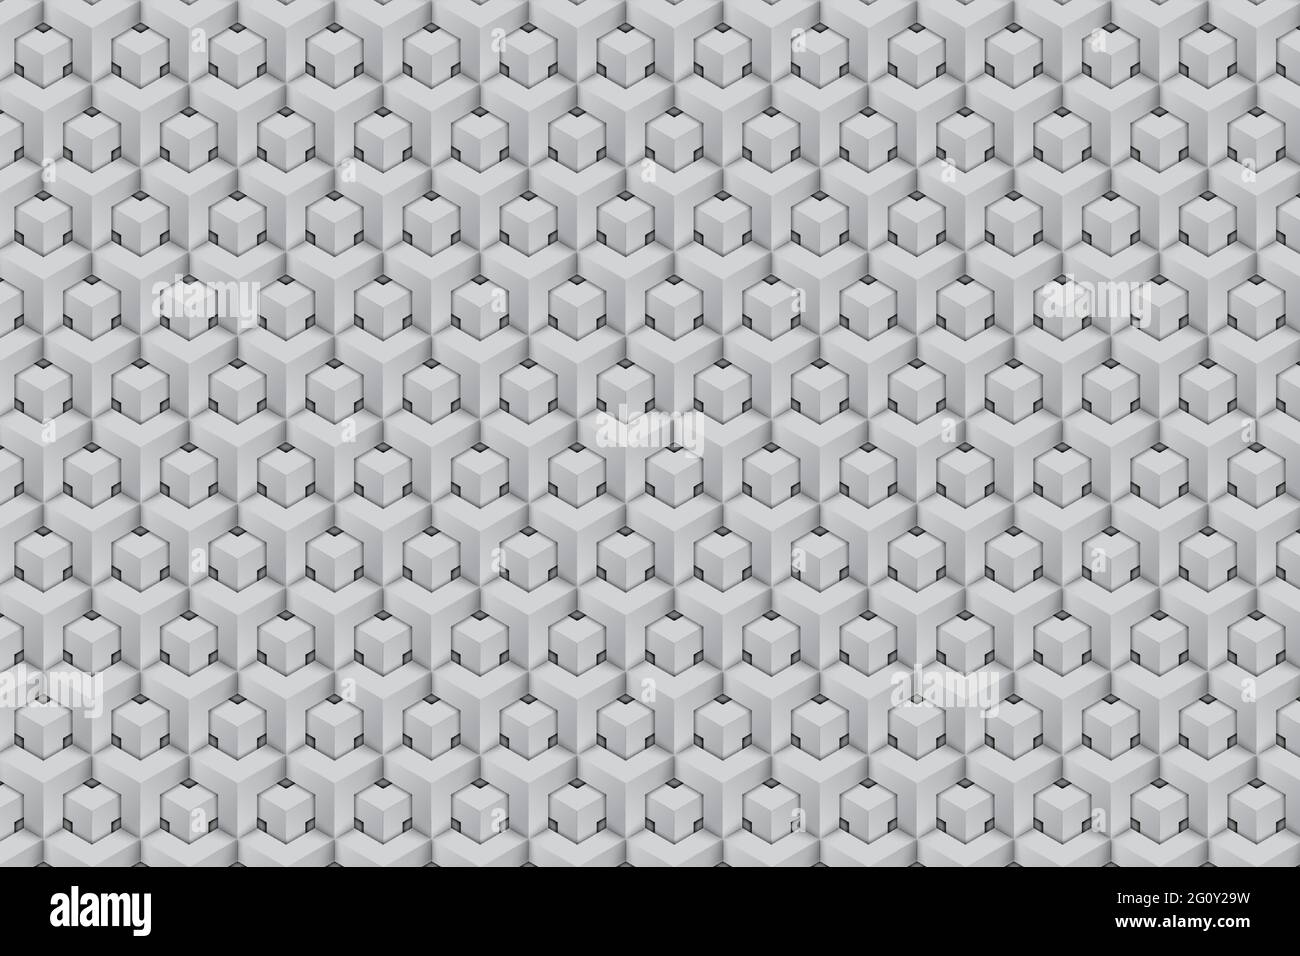 Abstrakter Hintergrund mit isometrischen 3d polygonalen Formen nahtlose Muster.Vorlage für Web-Design, Abdeckungen oder Banner.Moderne Stil grafische Elemente Stock Vektor